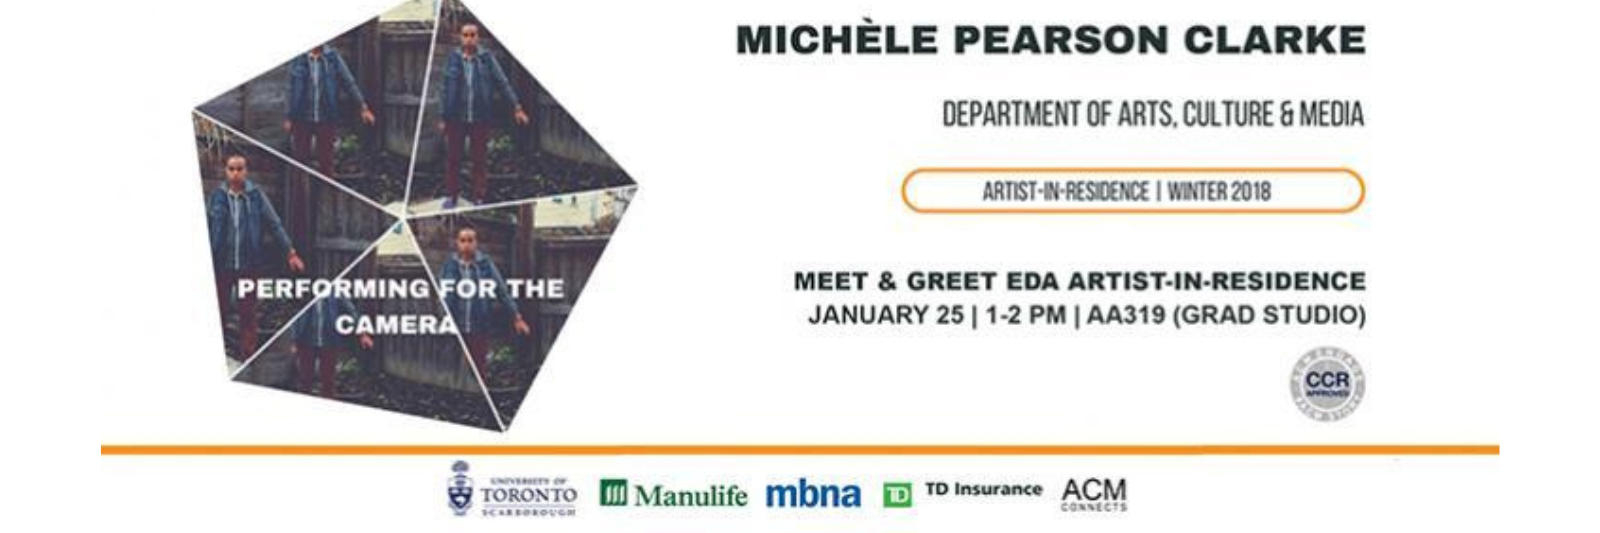 Meet & Greet EDA Artist-in-Residence: Michele Pearson Clarke